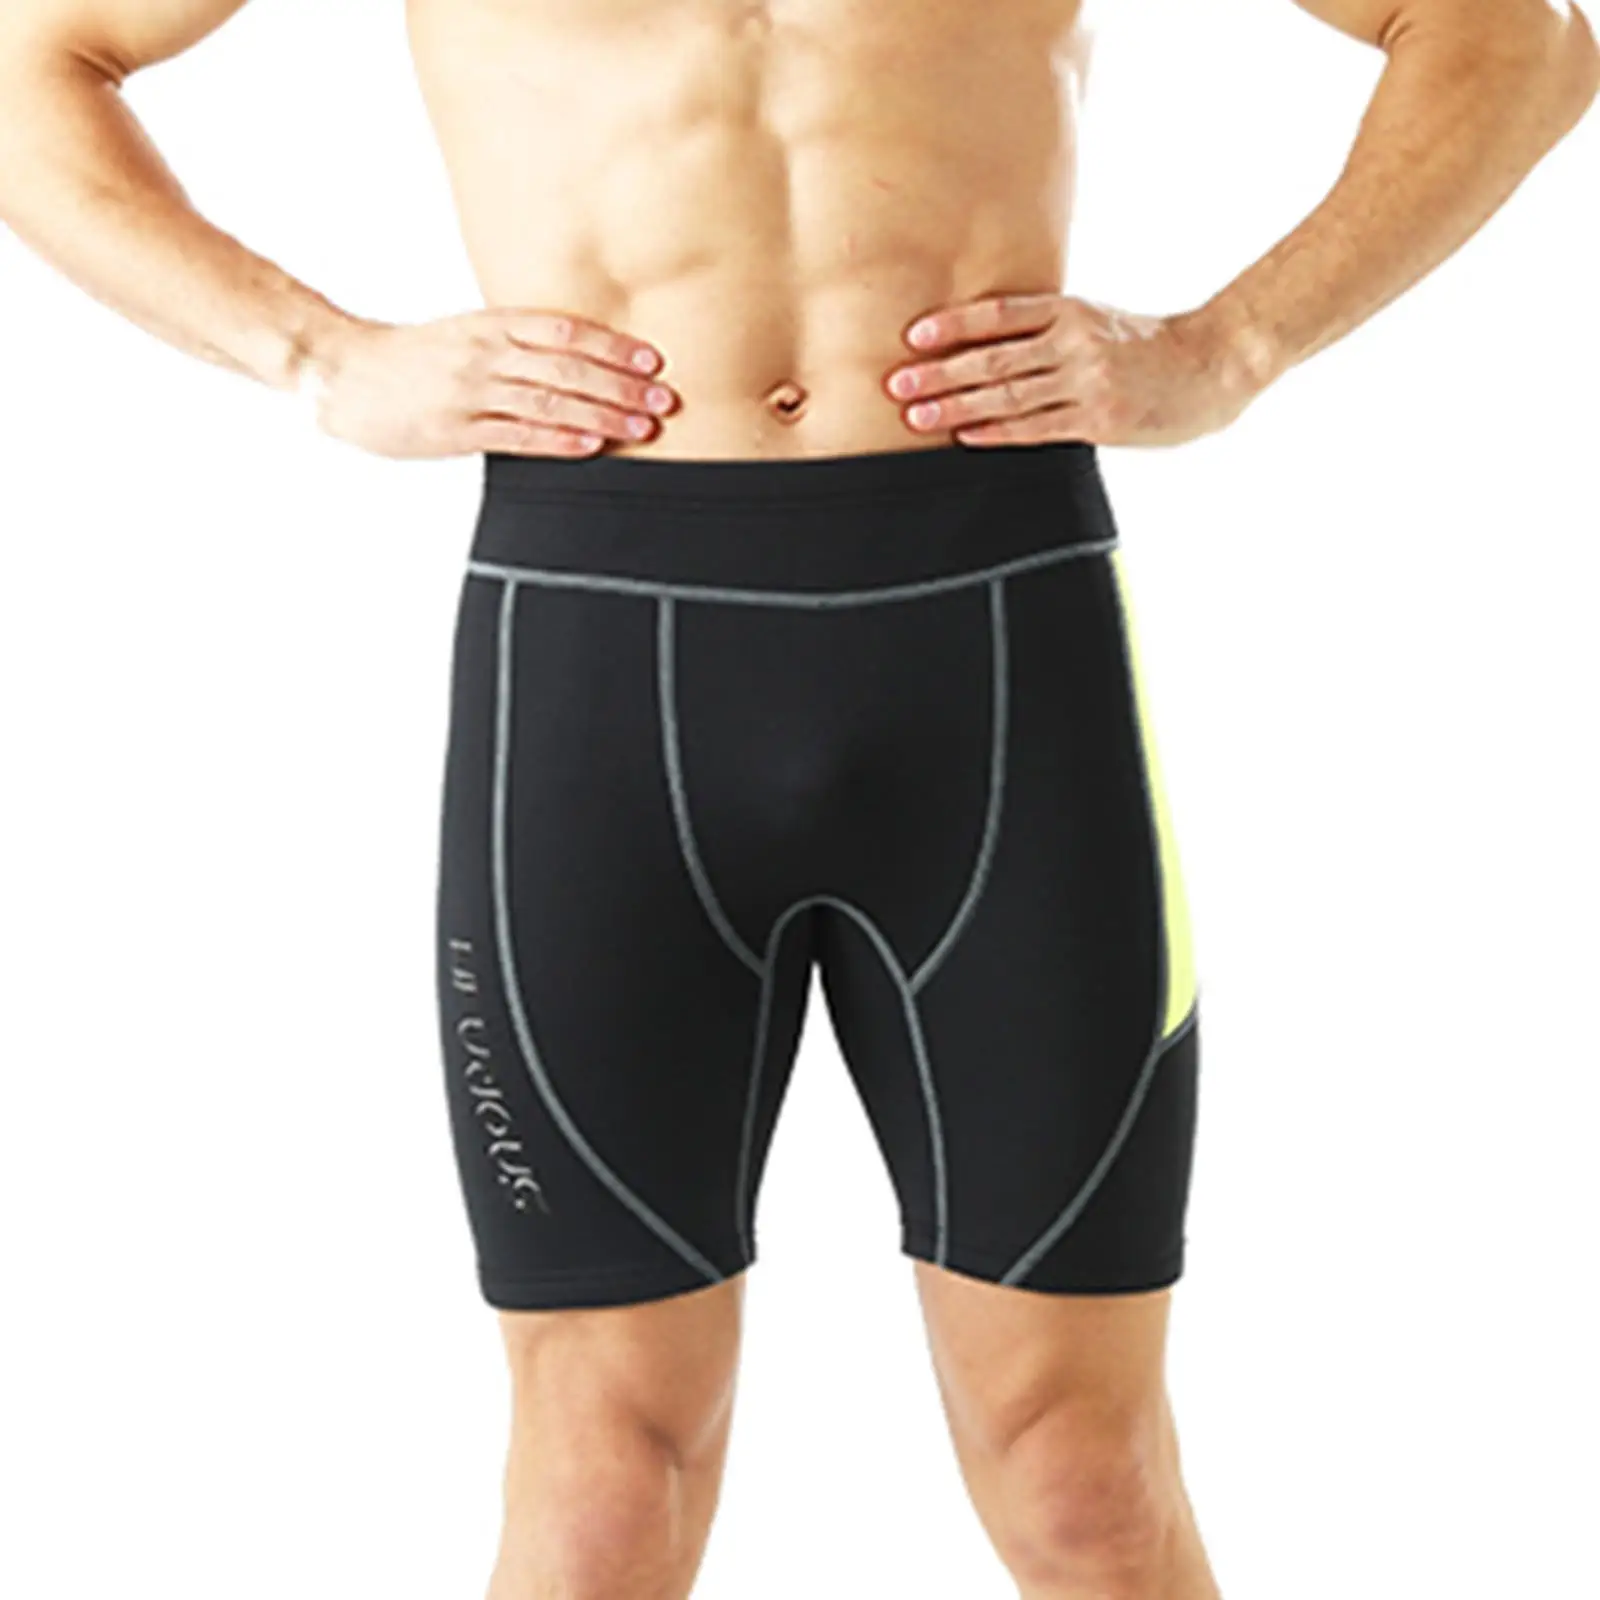 Мъжки неопренови шорти с дебелина 2 мм, за топене на неопрен за водна аеробика, спортни панталони за неопрен - 3